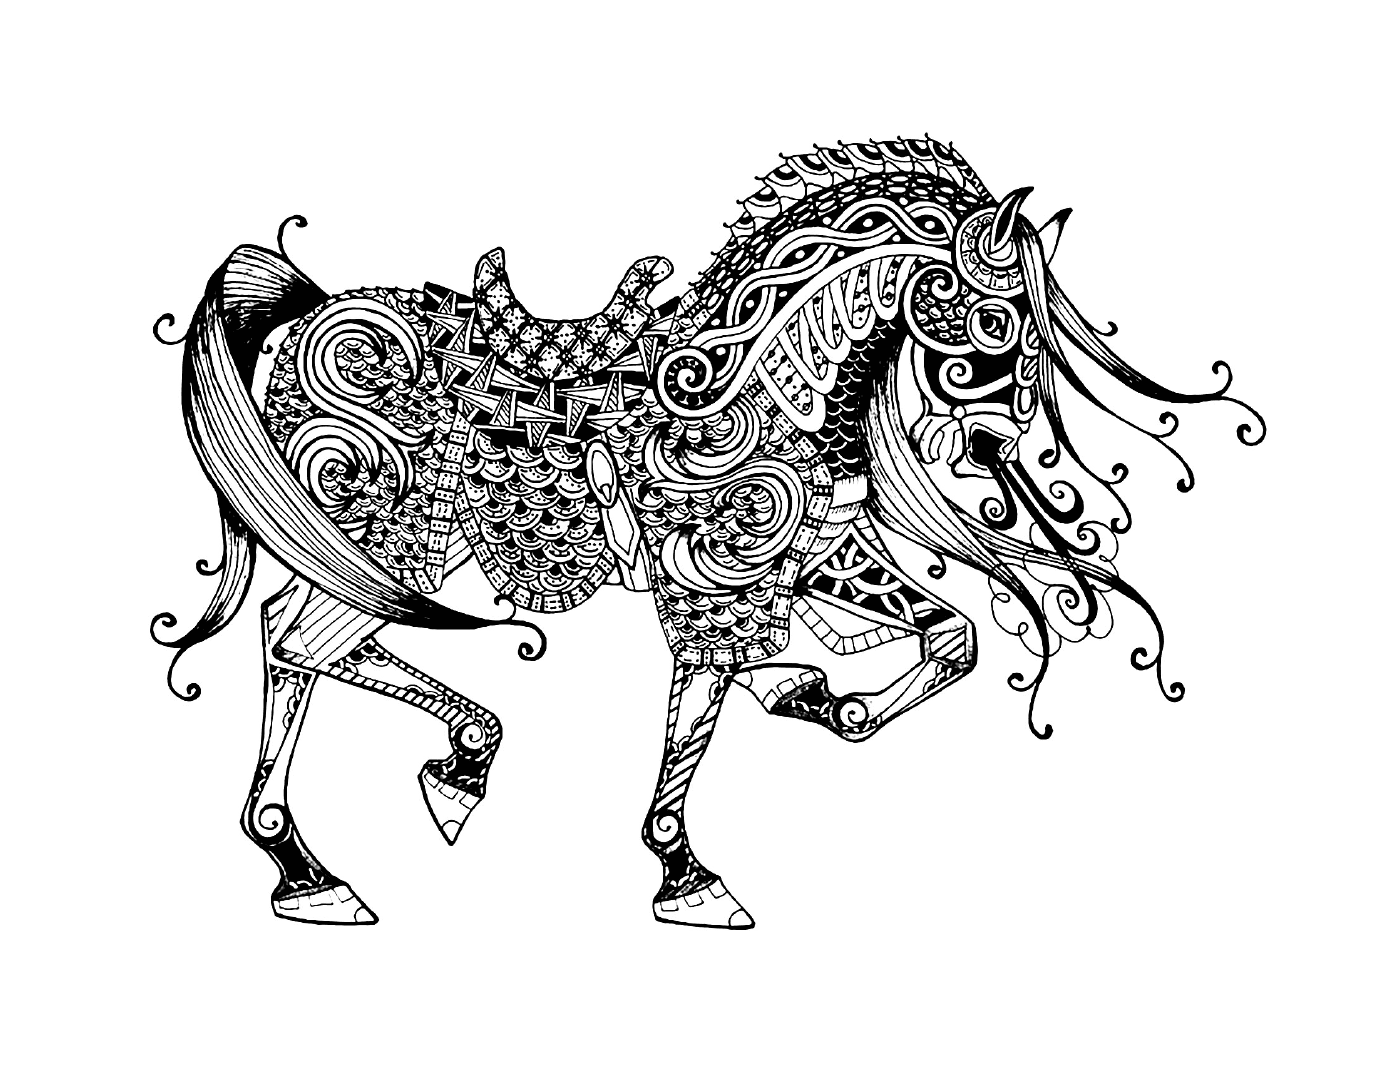  Элегантная лошадь с рисунком пейсли 